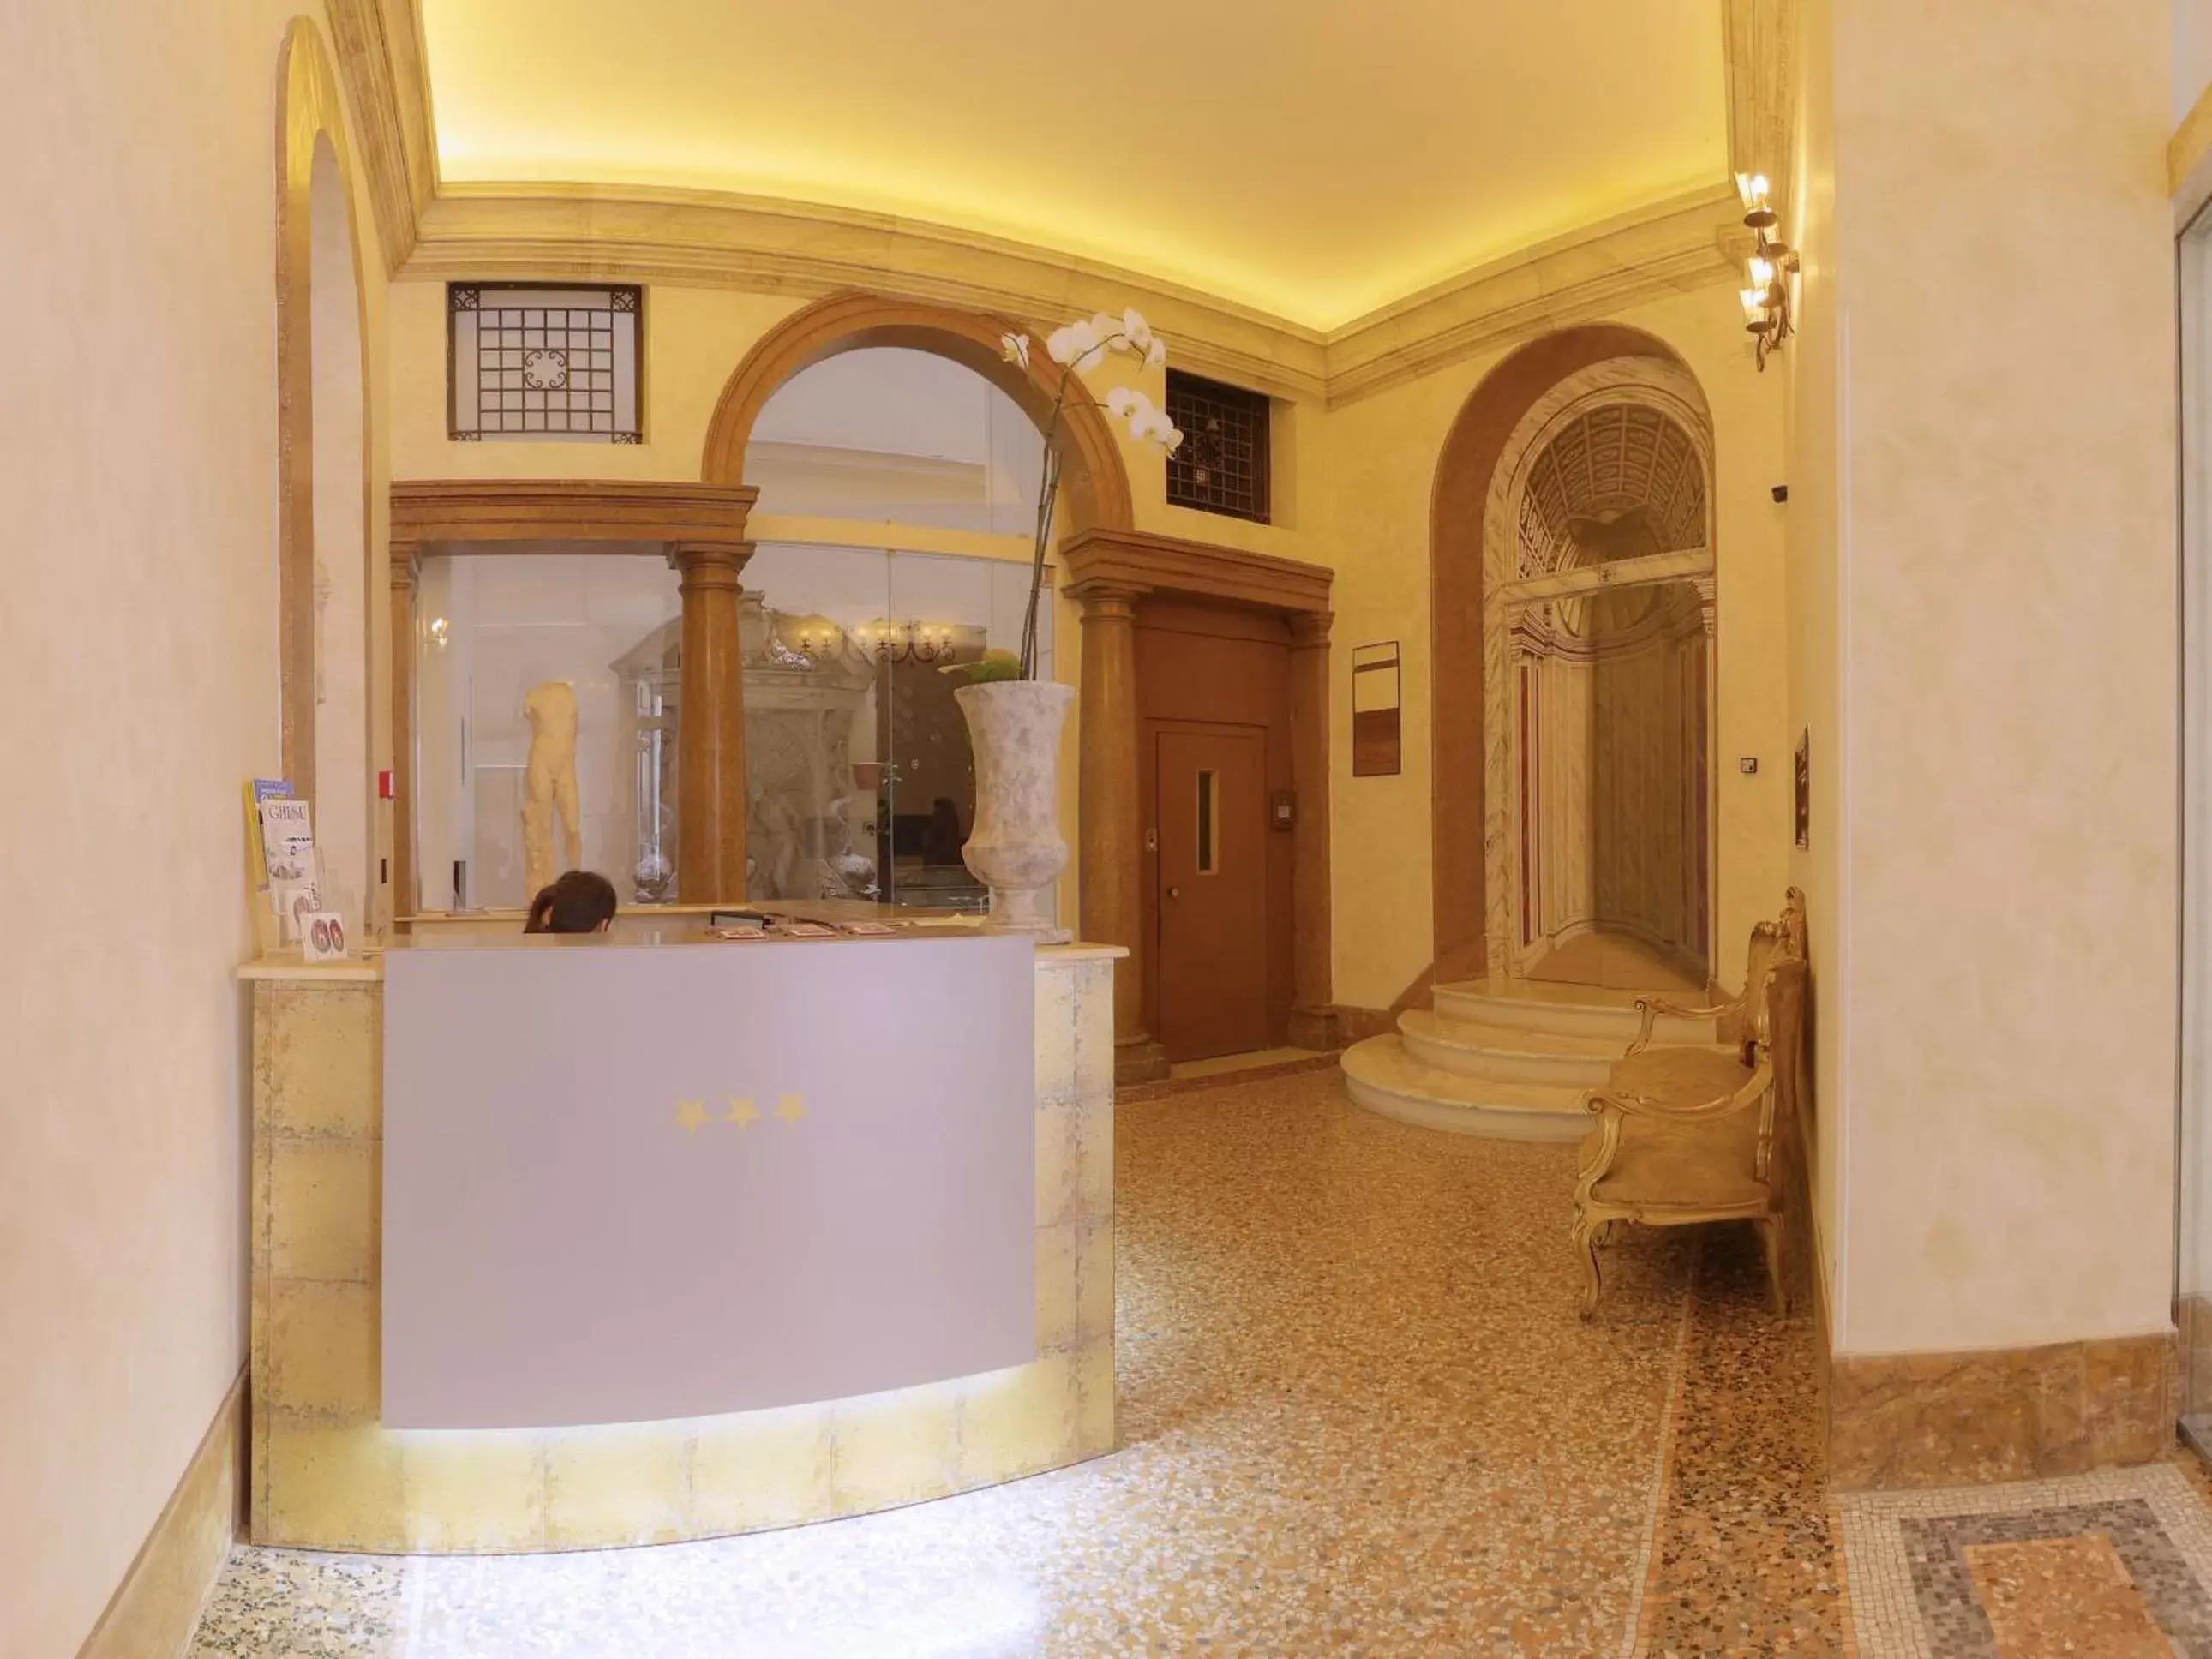 Lobby or reception in Antica Dimora Delle Cinque Lune